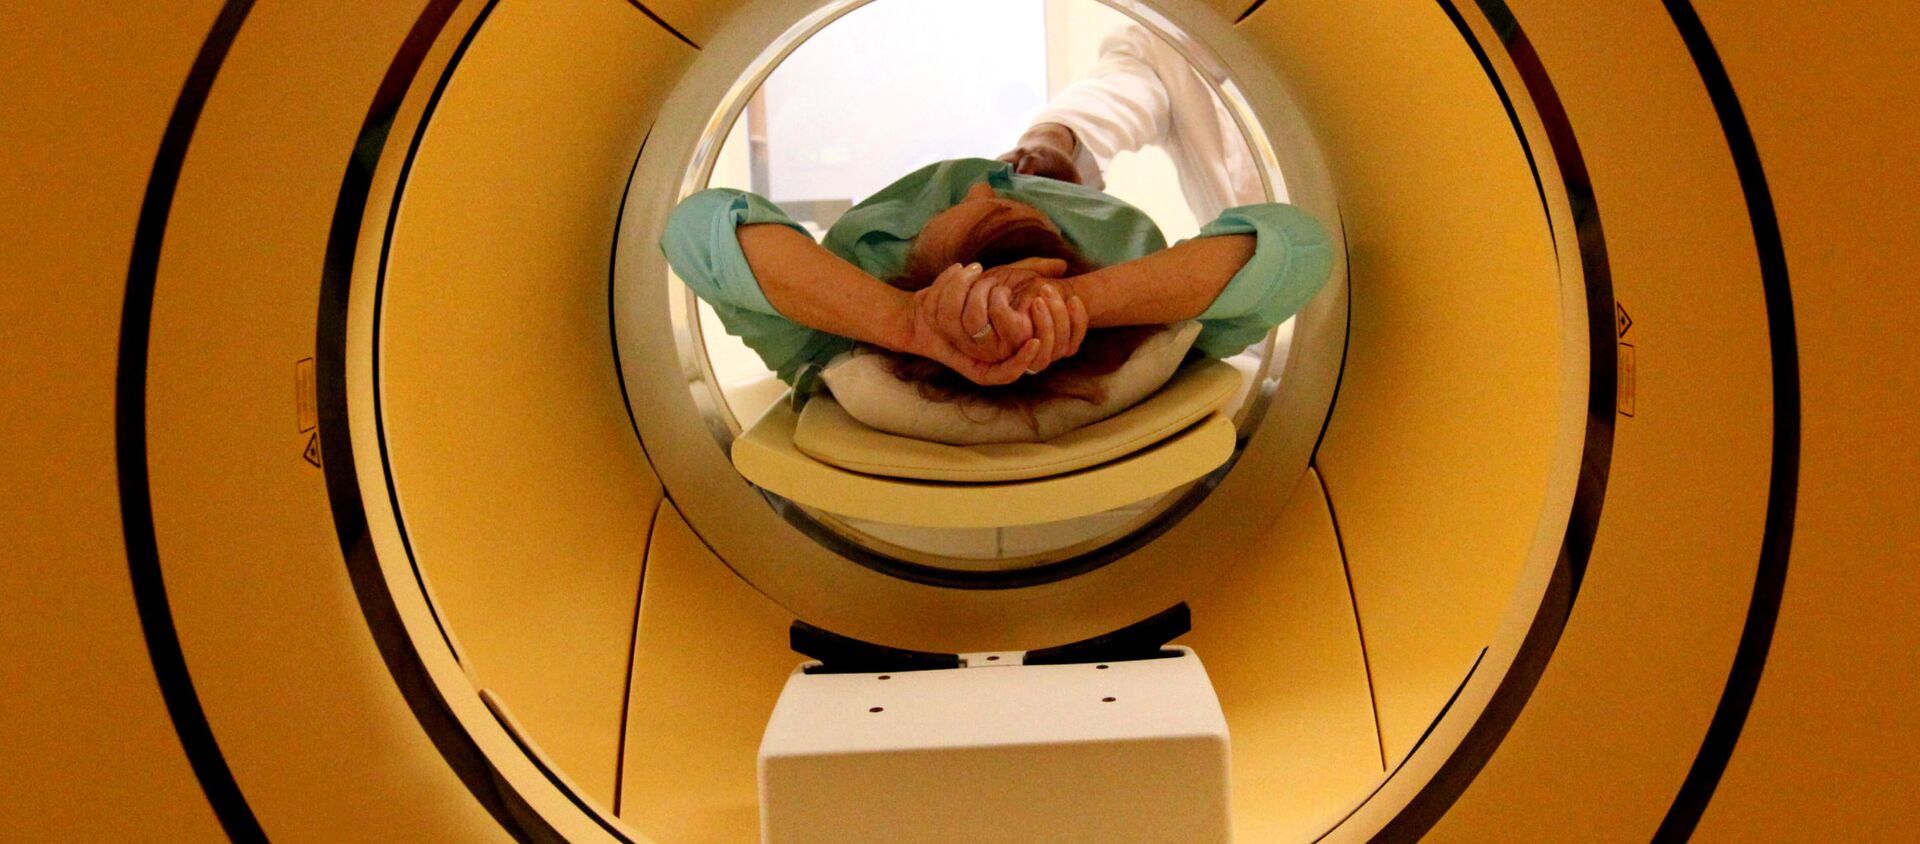 Пациент во время обследования c помощью совмещенного позитронно-эмиссионного и комьютерного томографа во Владивостоке - Sputnik Молдова, 1920, 05.04.2021